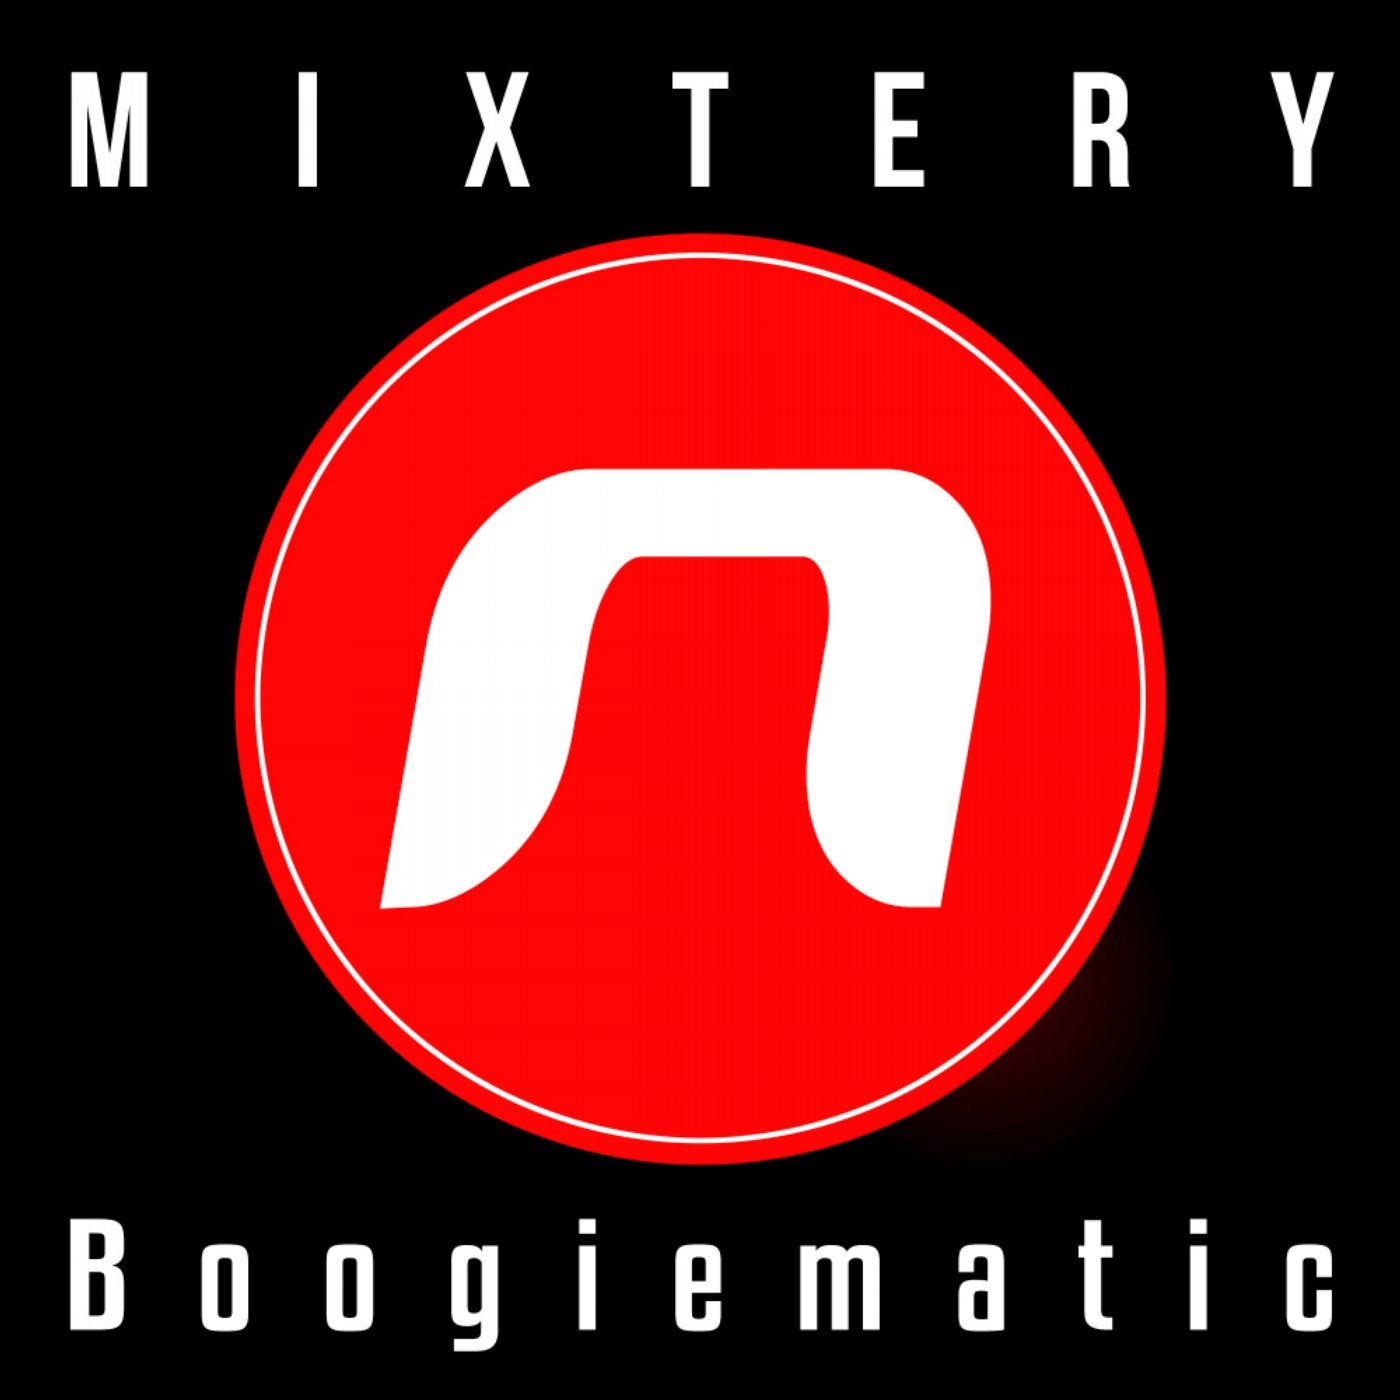 Boogiematic (Ivan Jack Remix)